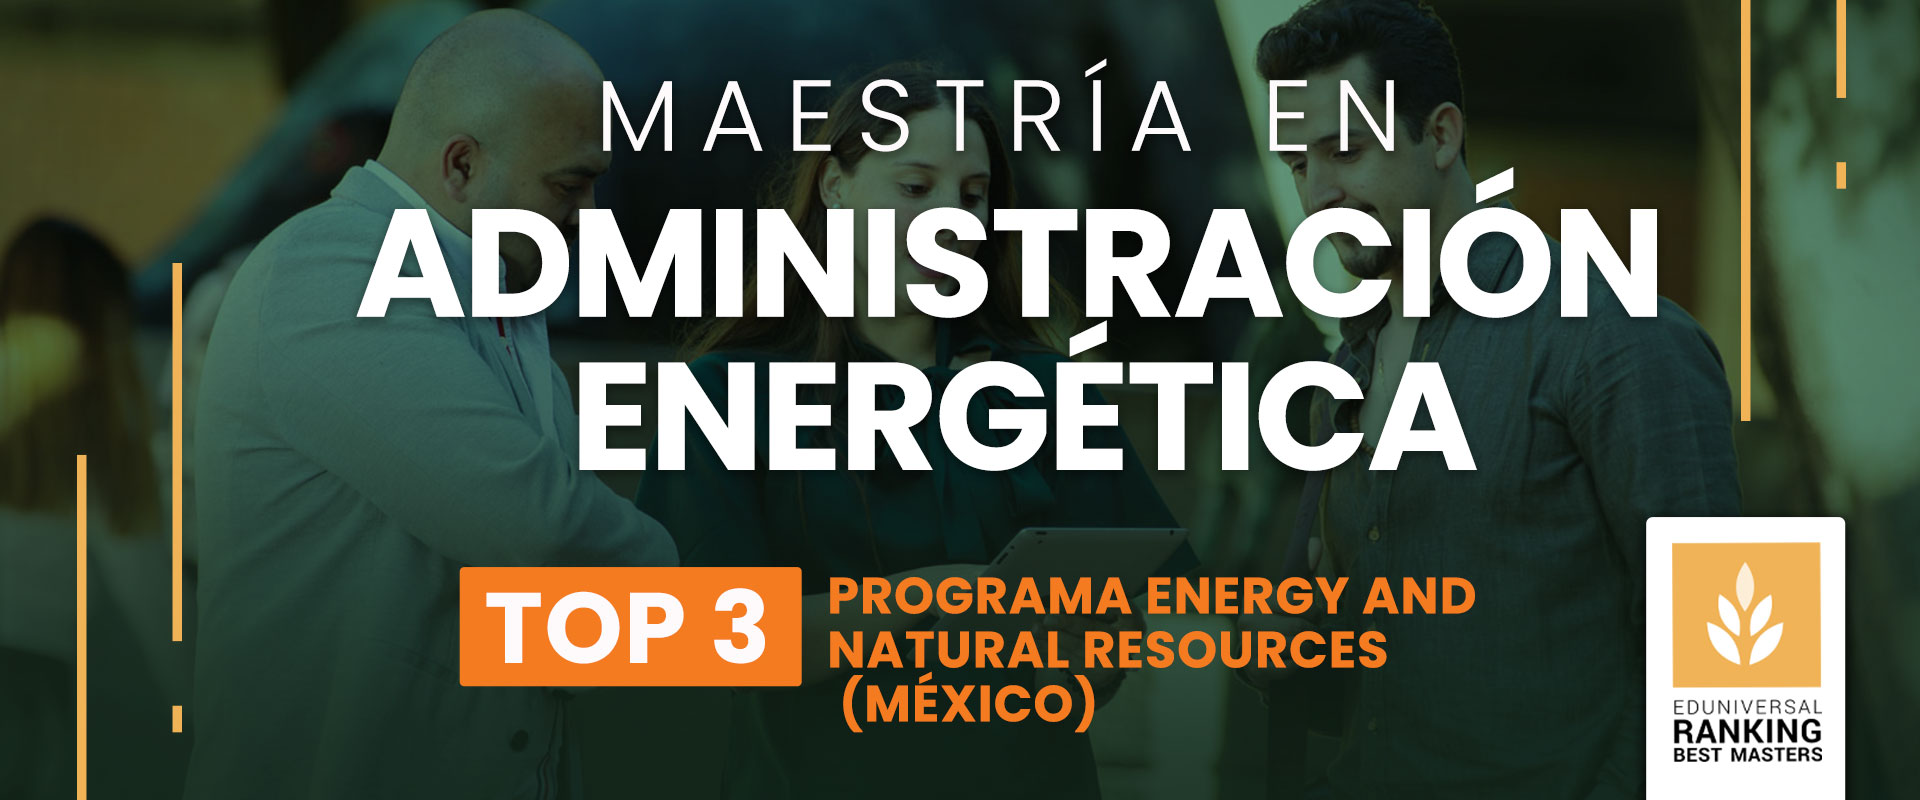 Maestría en Administración Energética - Universidad de las Américas Puebla (UDLAP)